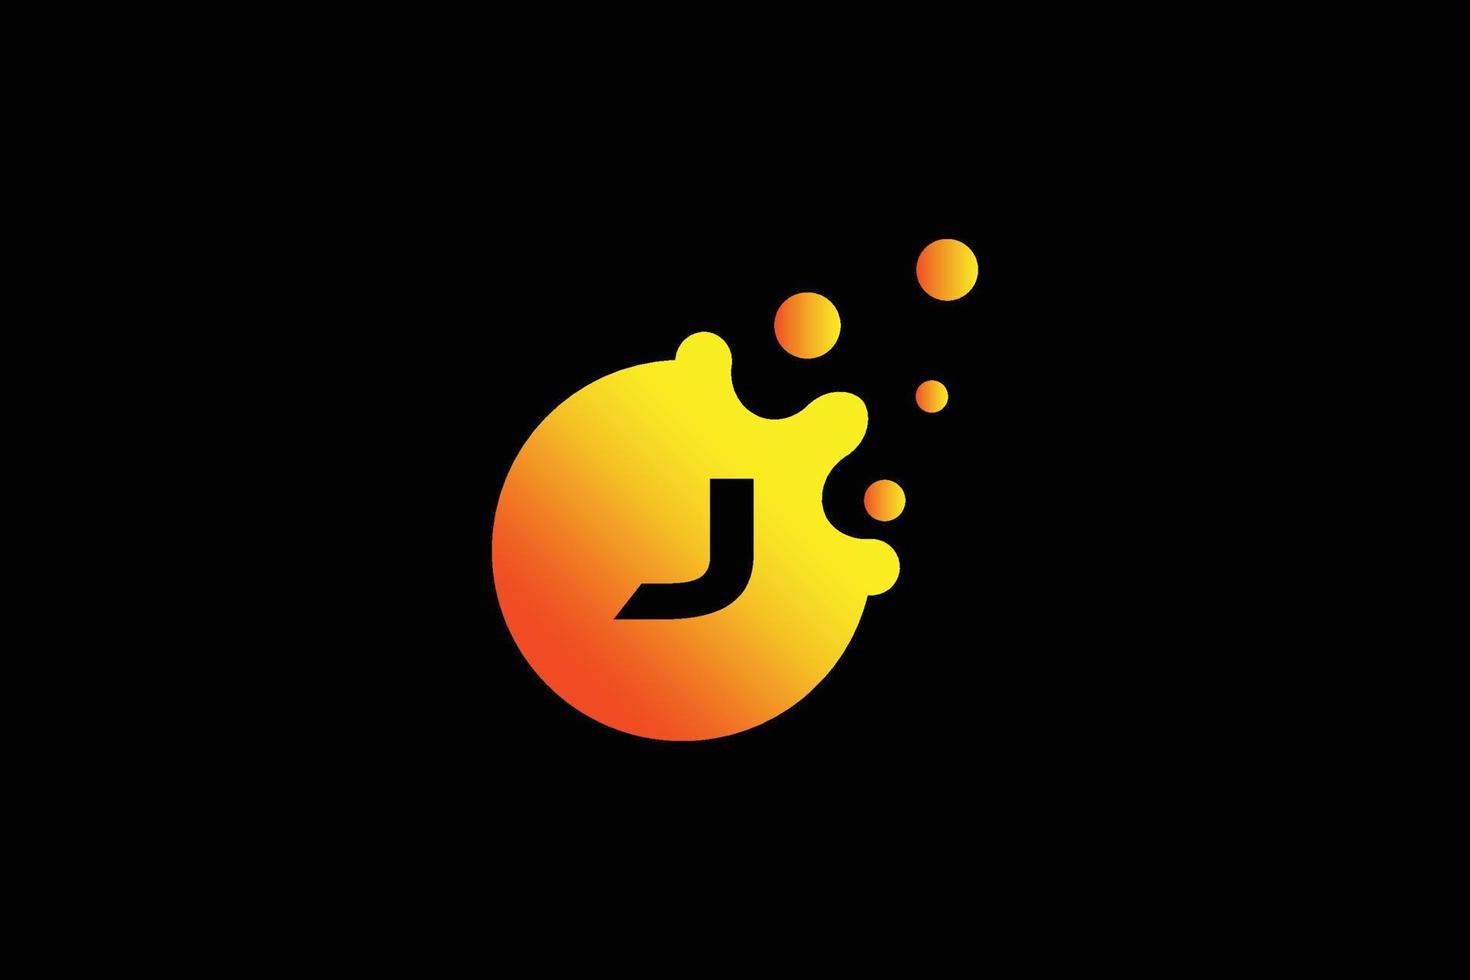 logotipo de la letra j. vector de diseño de letra j con ilustración de vector de puntos. logotipo de marca de letra con degradado naranja y amarillo.